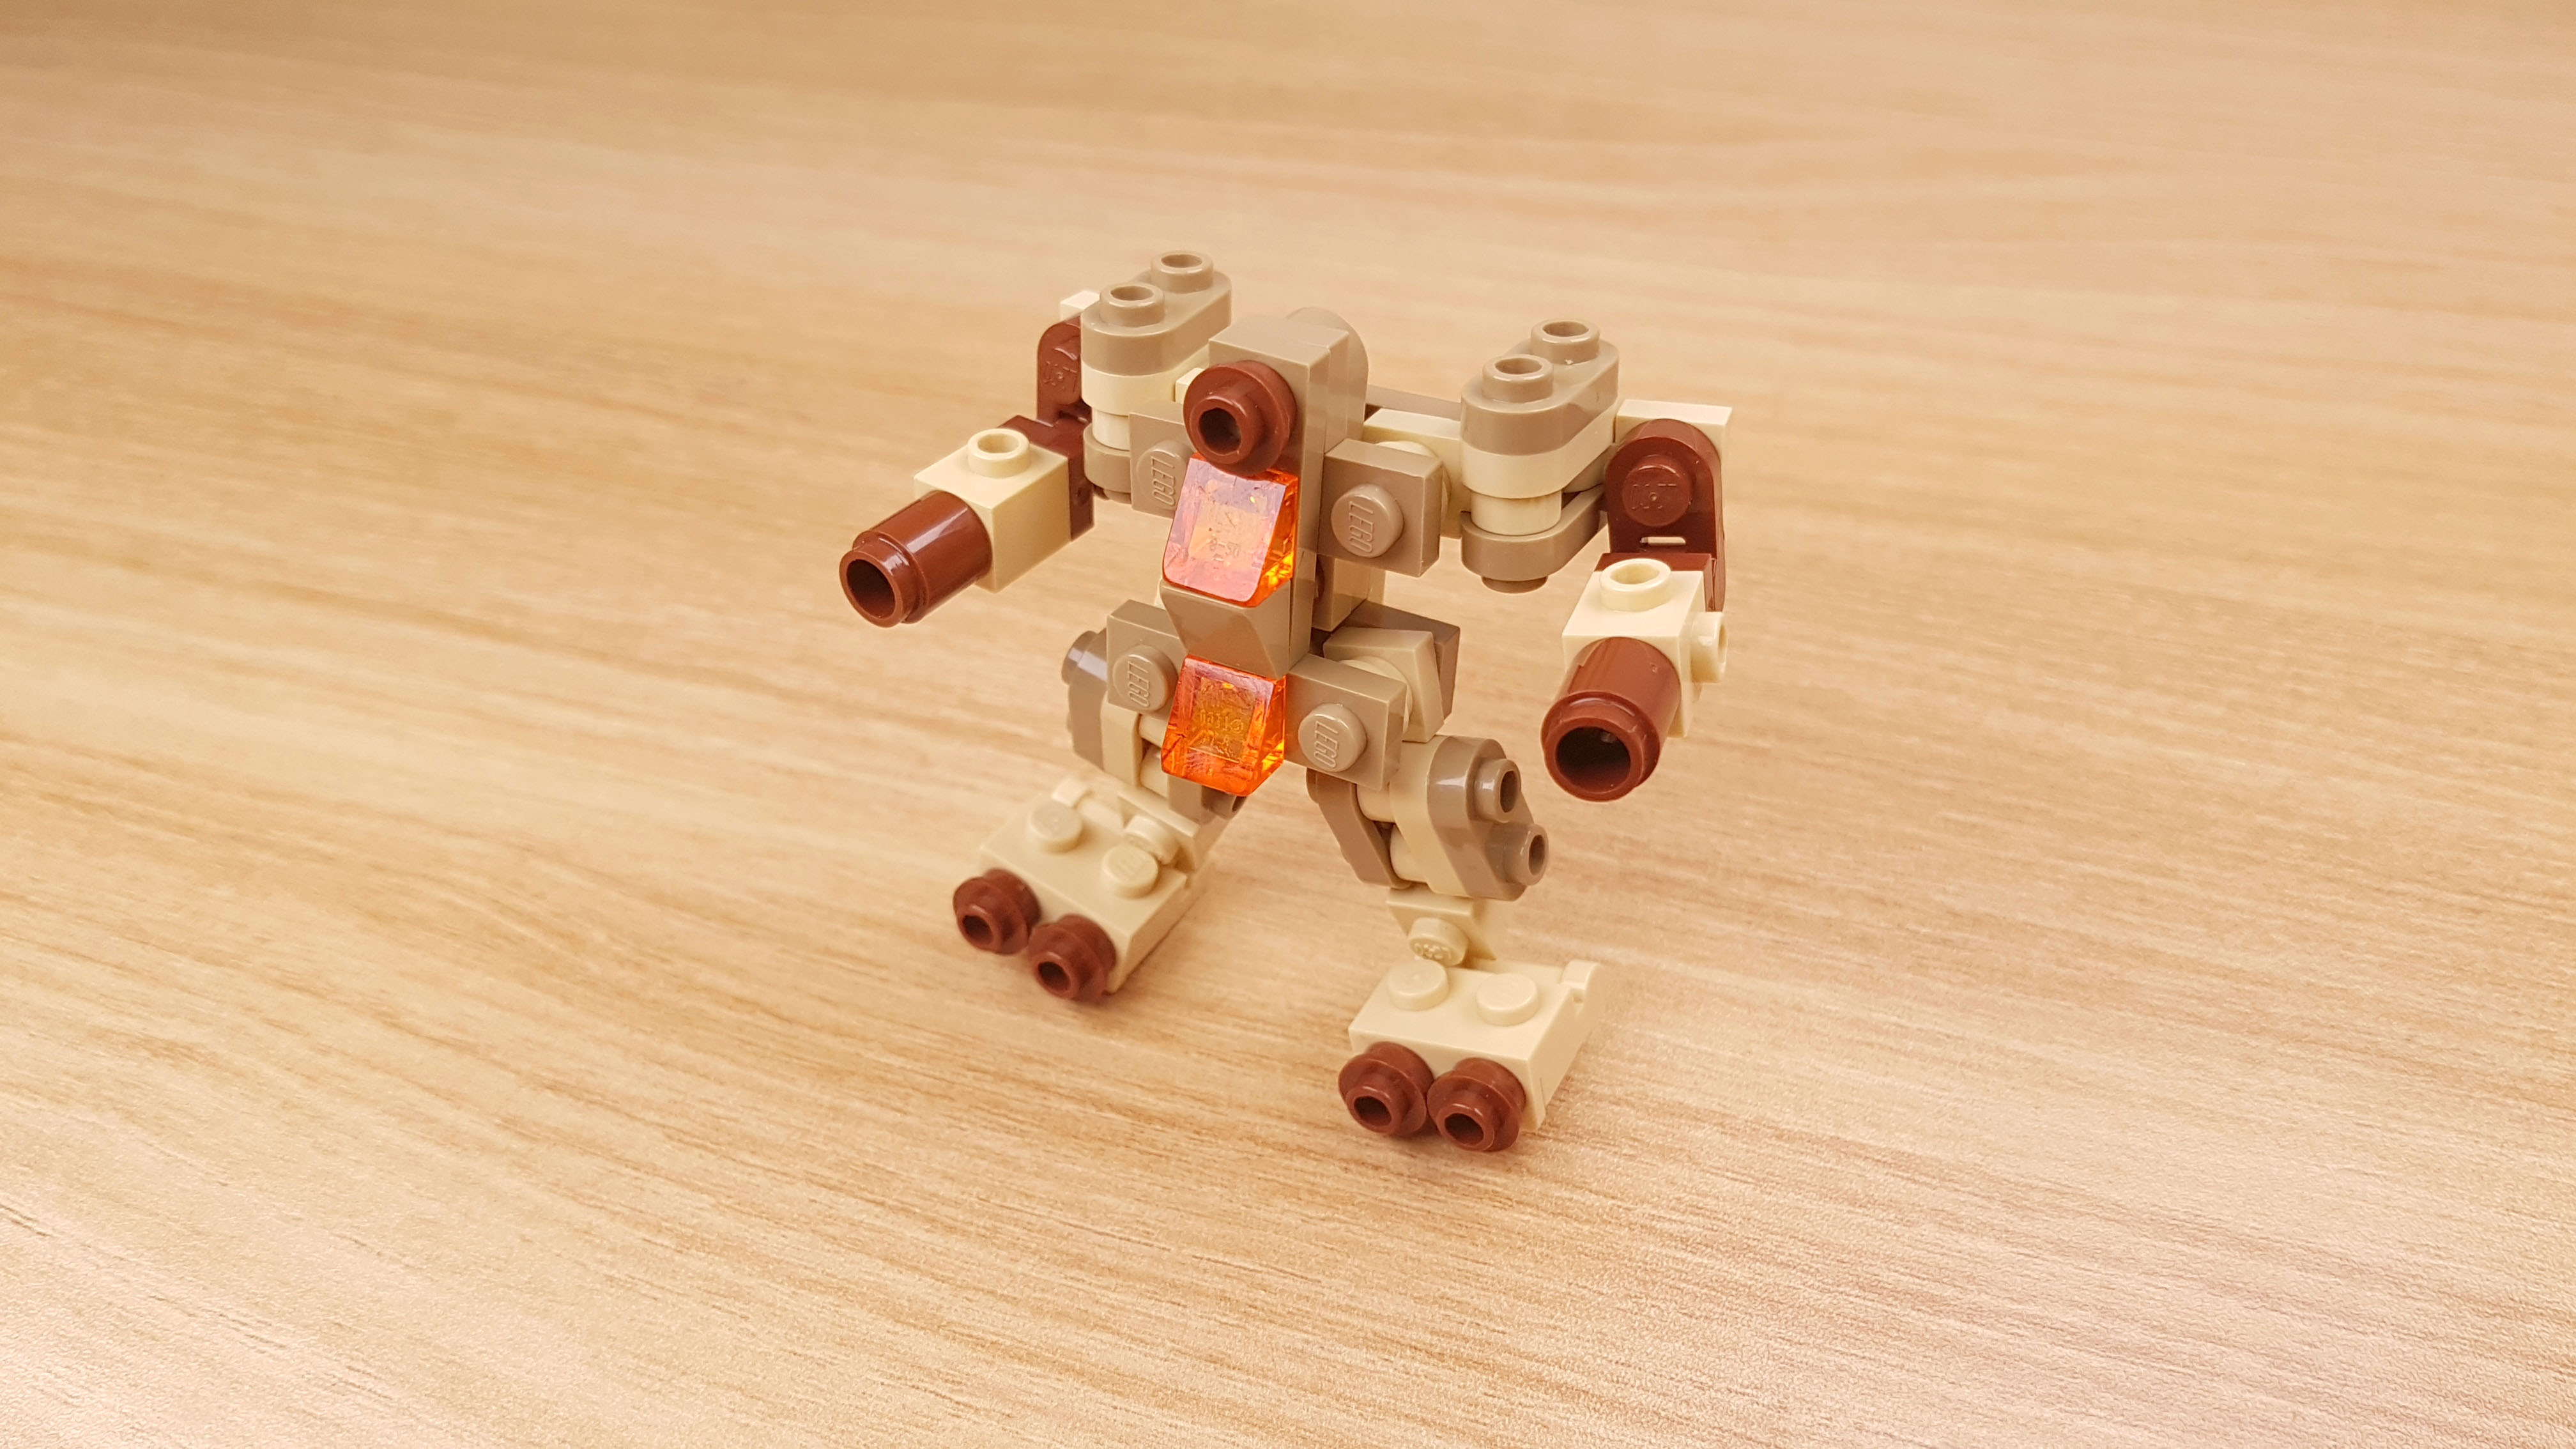 사막전투용으로 개발된 탱크형 2단 합체 미니레고로봇 - 탄 봇 1 - 변신,변신로봇,레고변신로봇